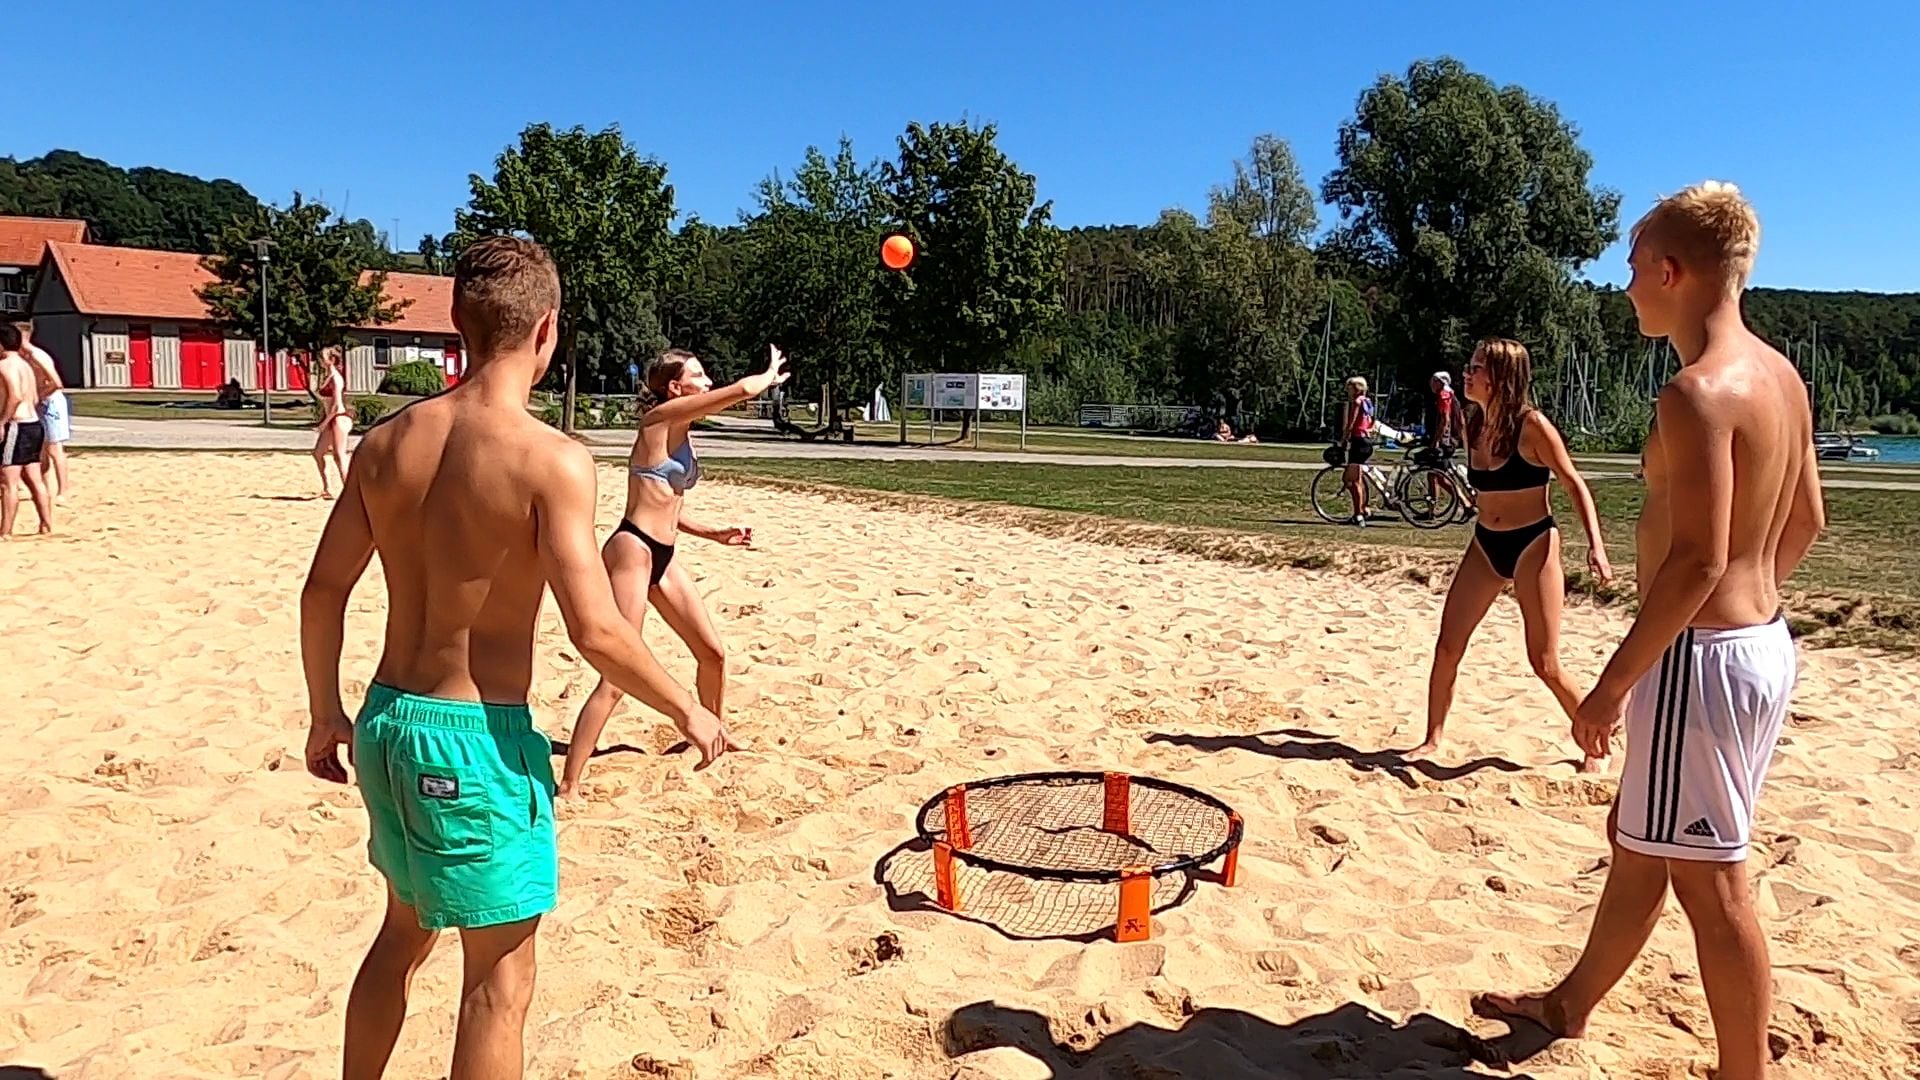 Sunflex Volleyballnetz »X-Ball, Volleyball Spiel im Garten oder Park, Trendspiel«